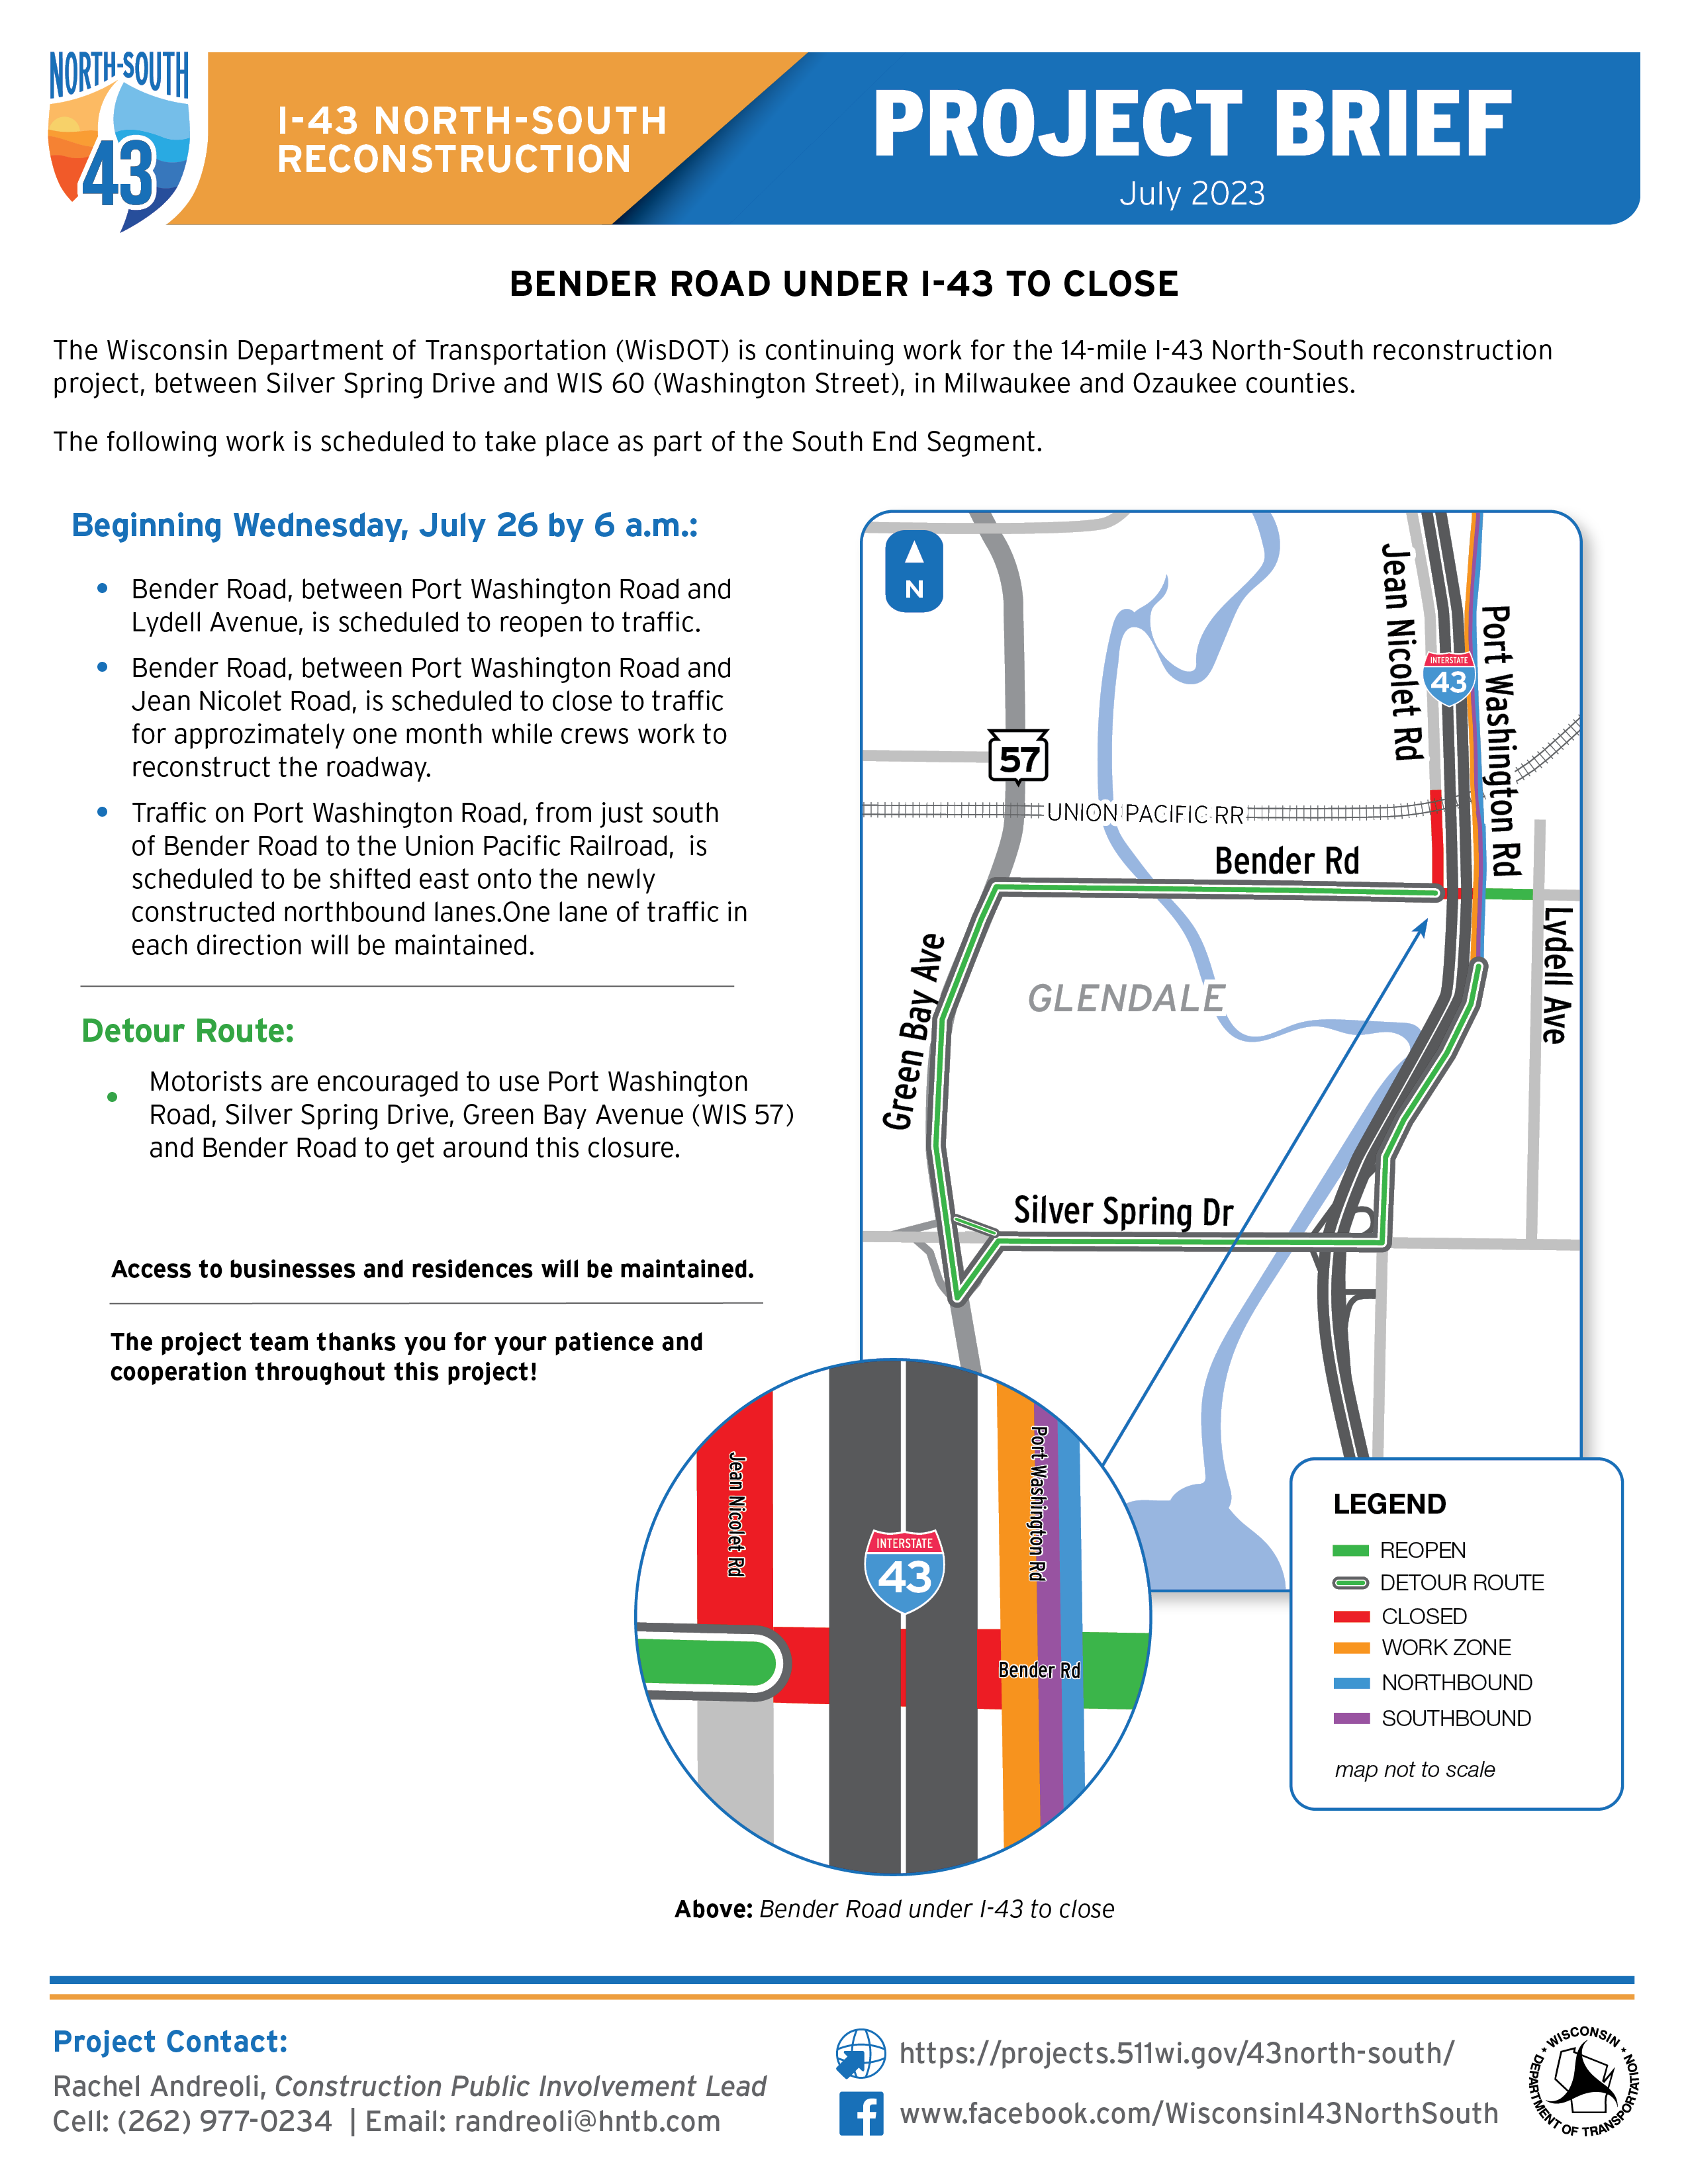 July 26, Bender Road under I-43 to Close